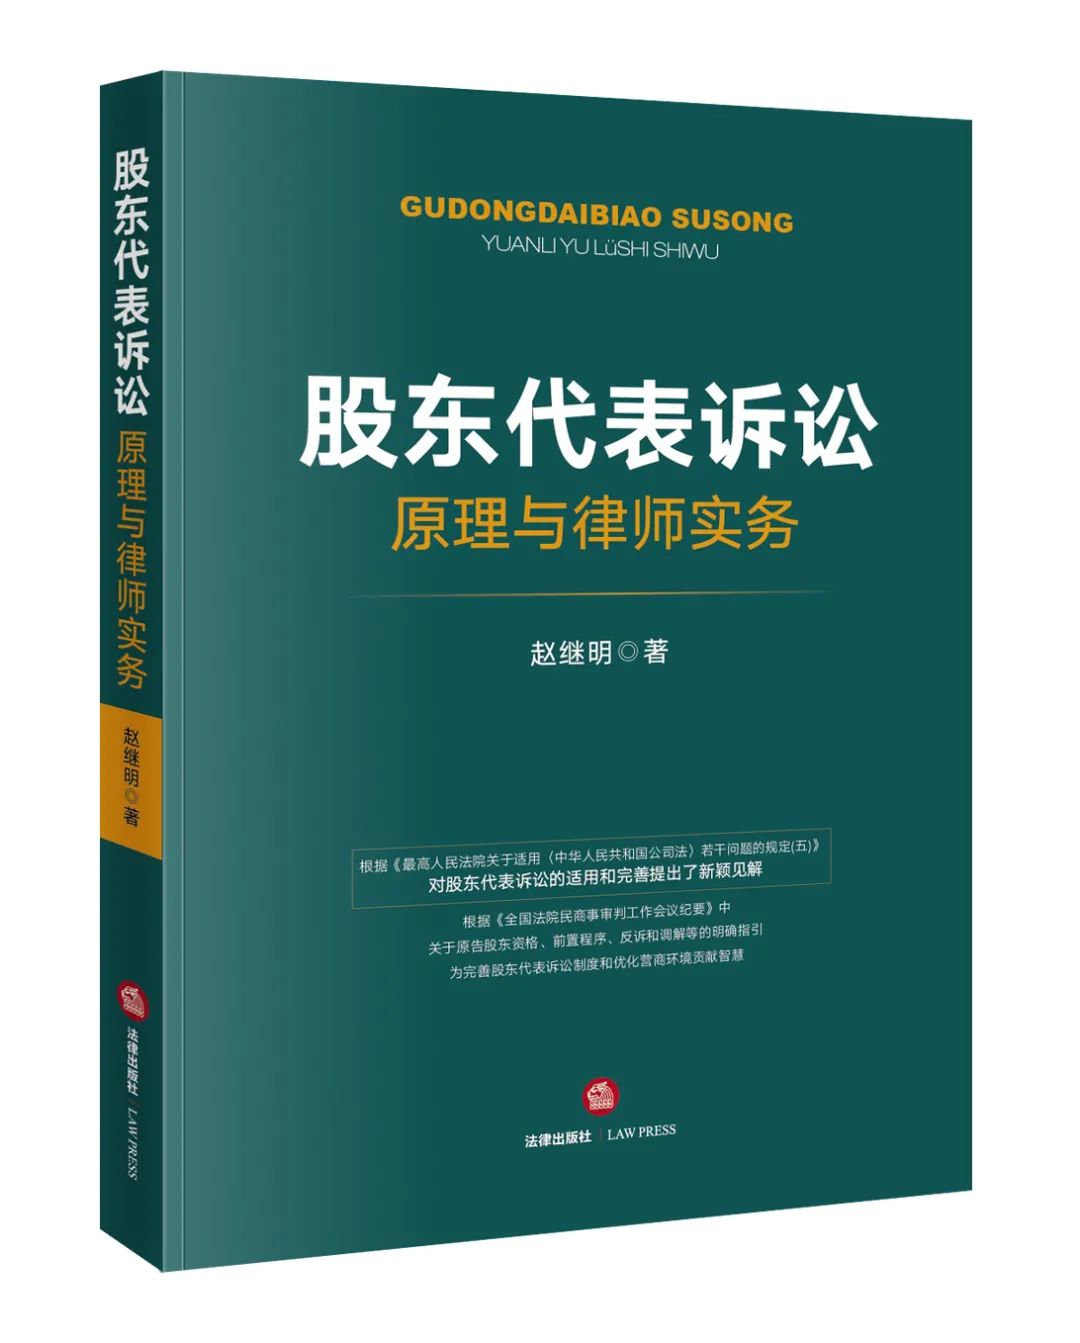 赵继明律师专著《股东代表诉讼原理与律师实务》由法律出版社出版发行